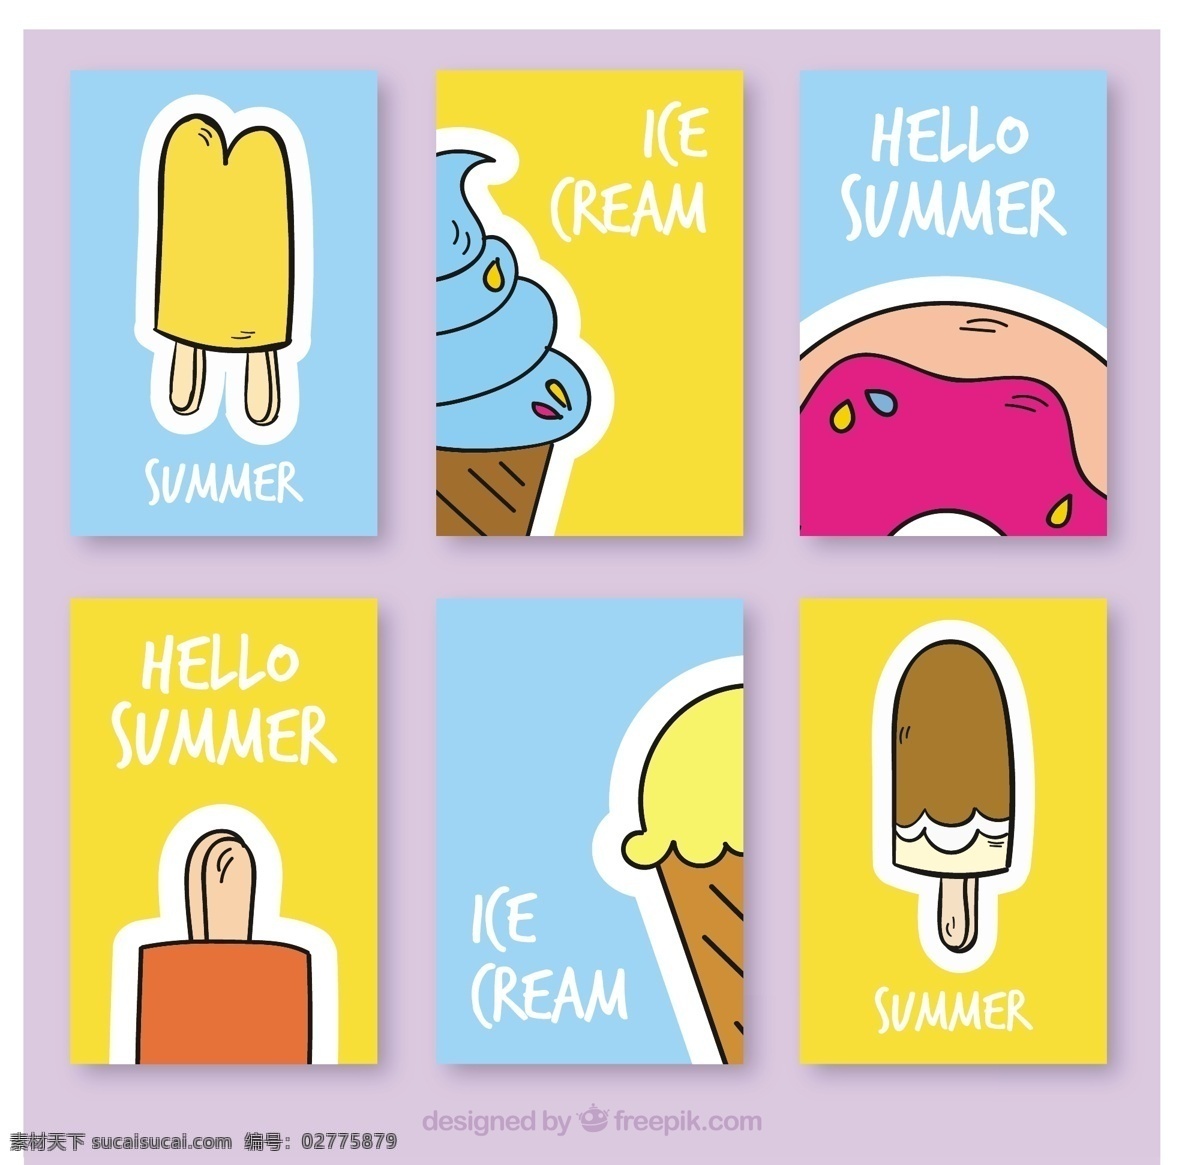 六手 抽 卡 包 冰激凌 食品 一方面 夏天 模板 手绘 冰淇淋 颜色 冰 甜 卡片 甜点 吃 季节 画包 草图 锥